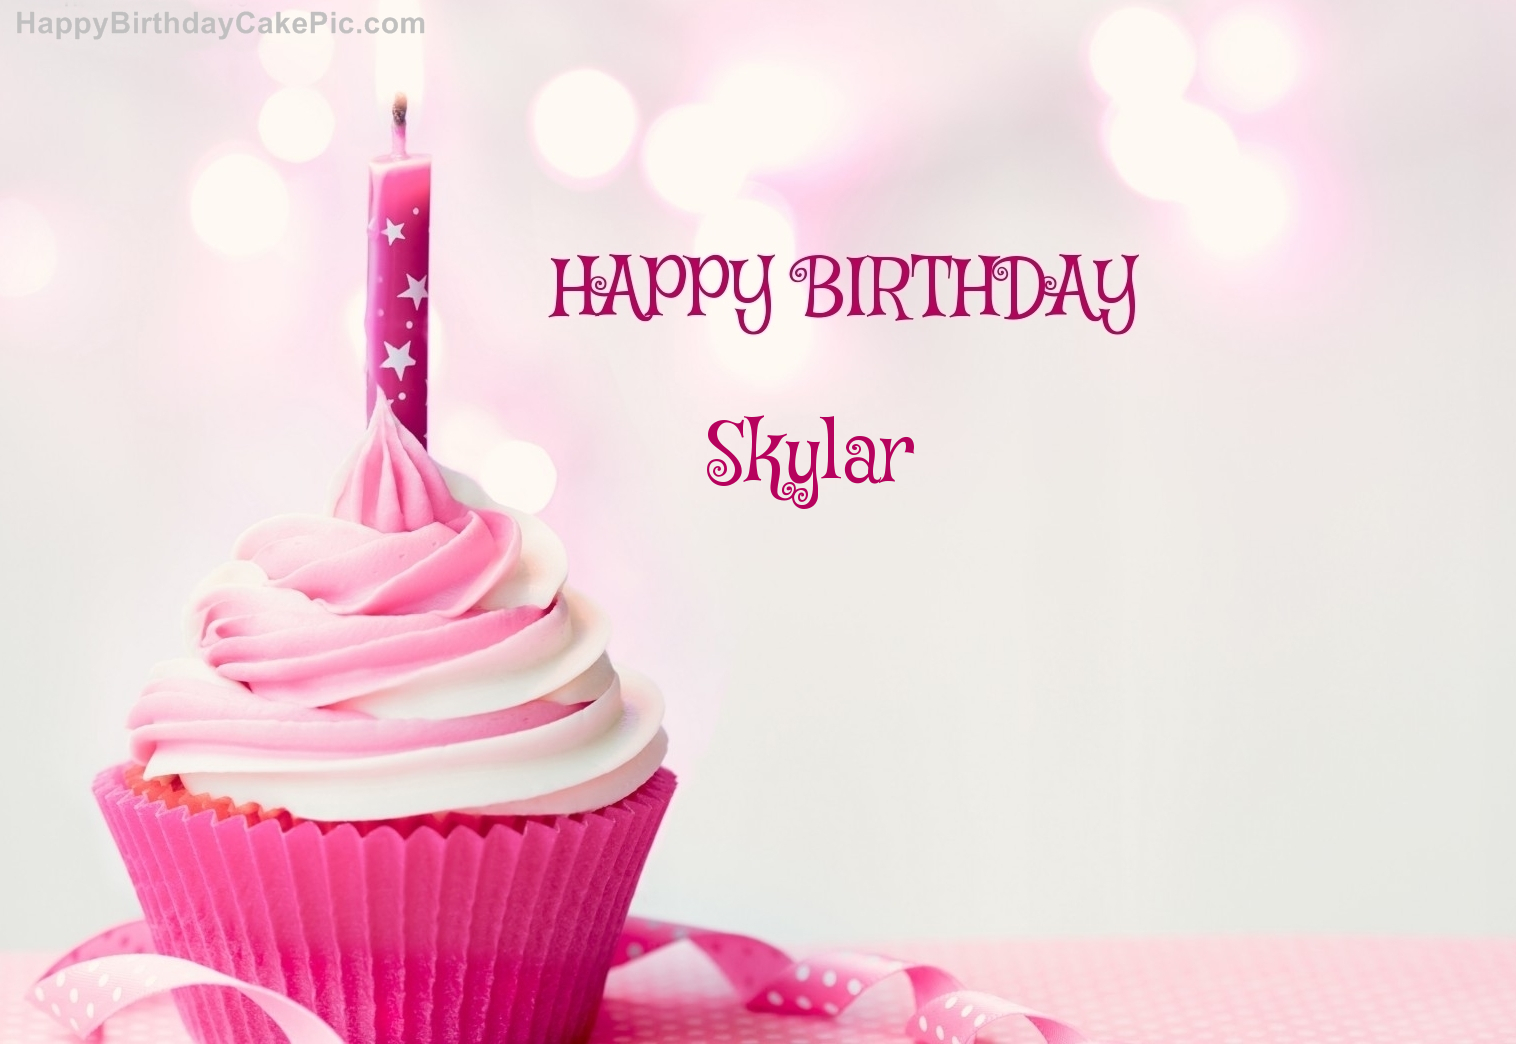 Happy Birthday Skylar